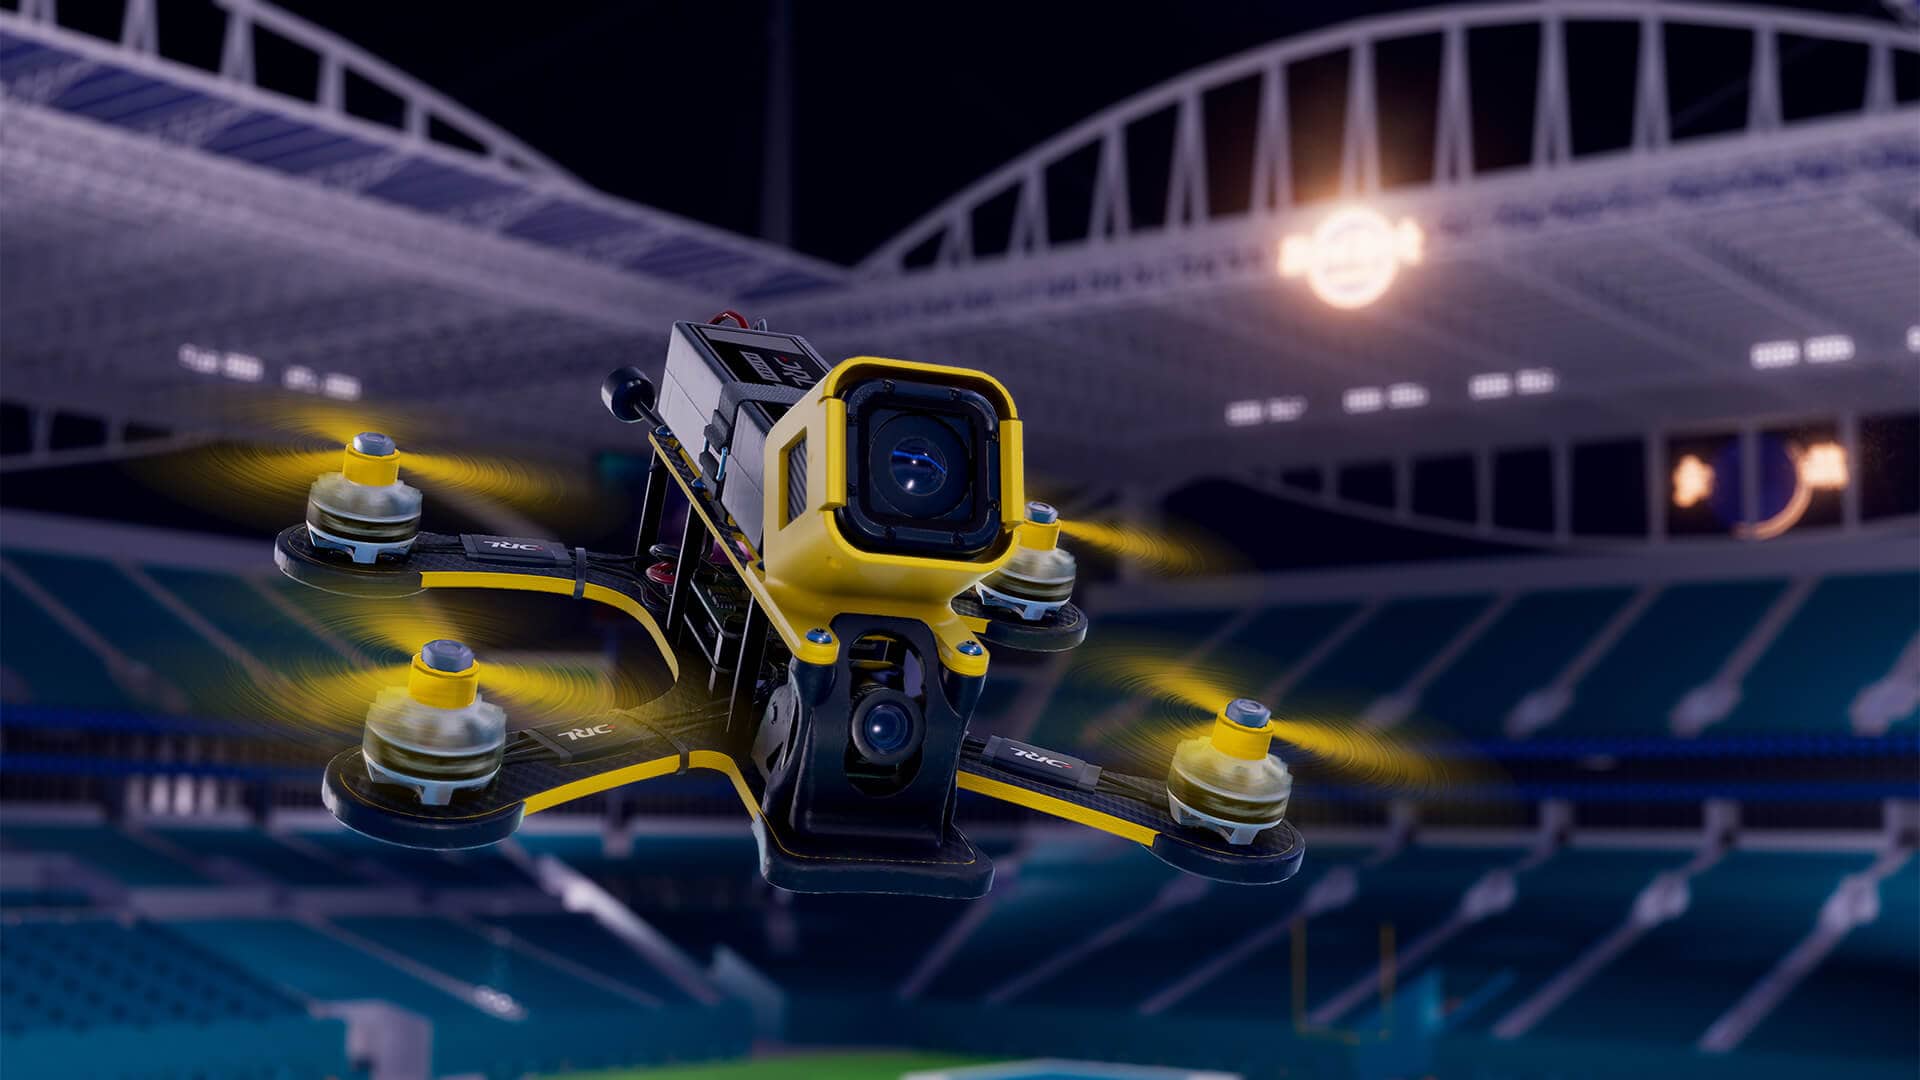 Velocidad, Innovación y Diversión: Así son las Carreras de Drones